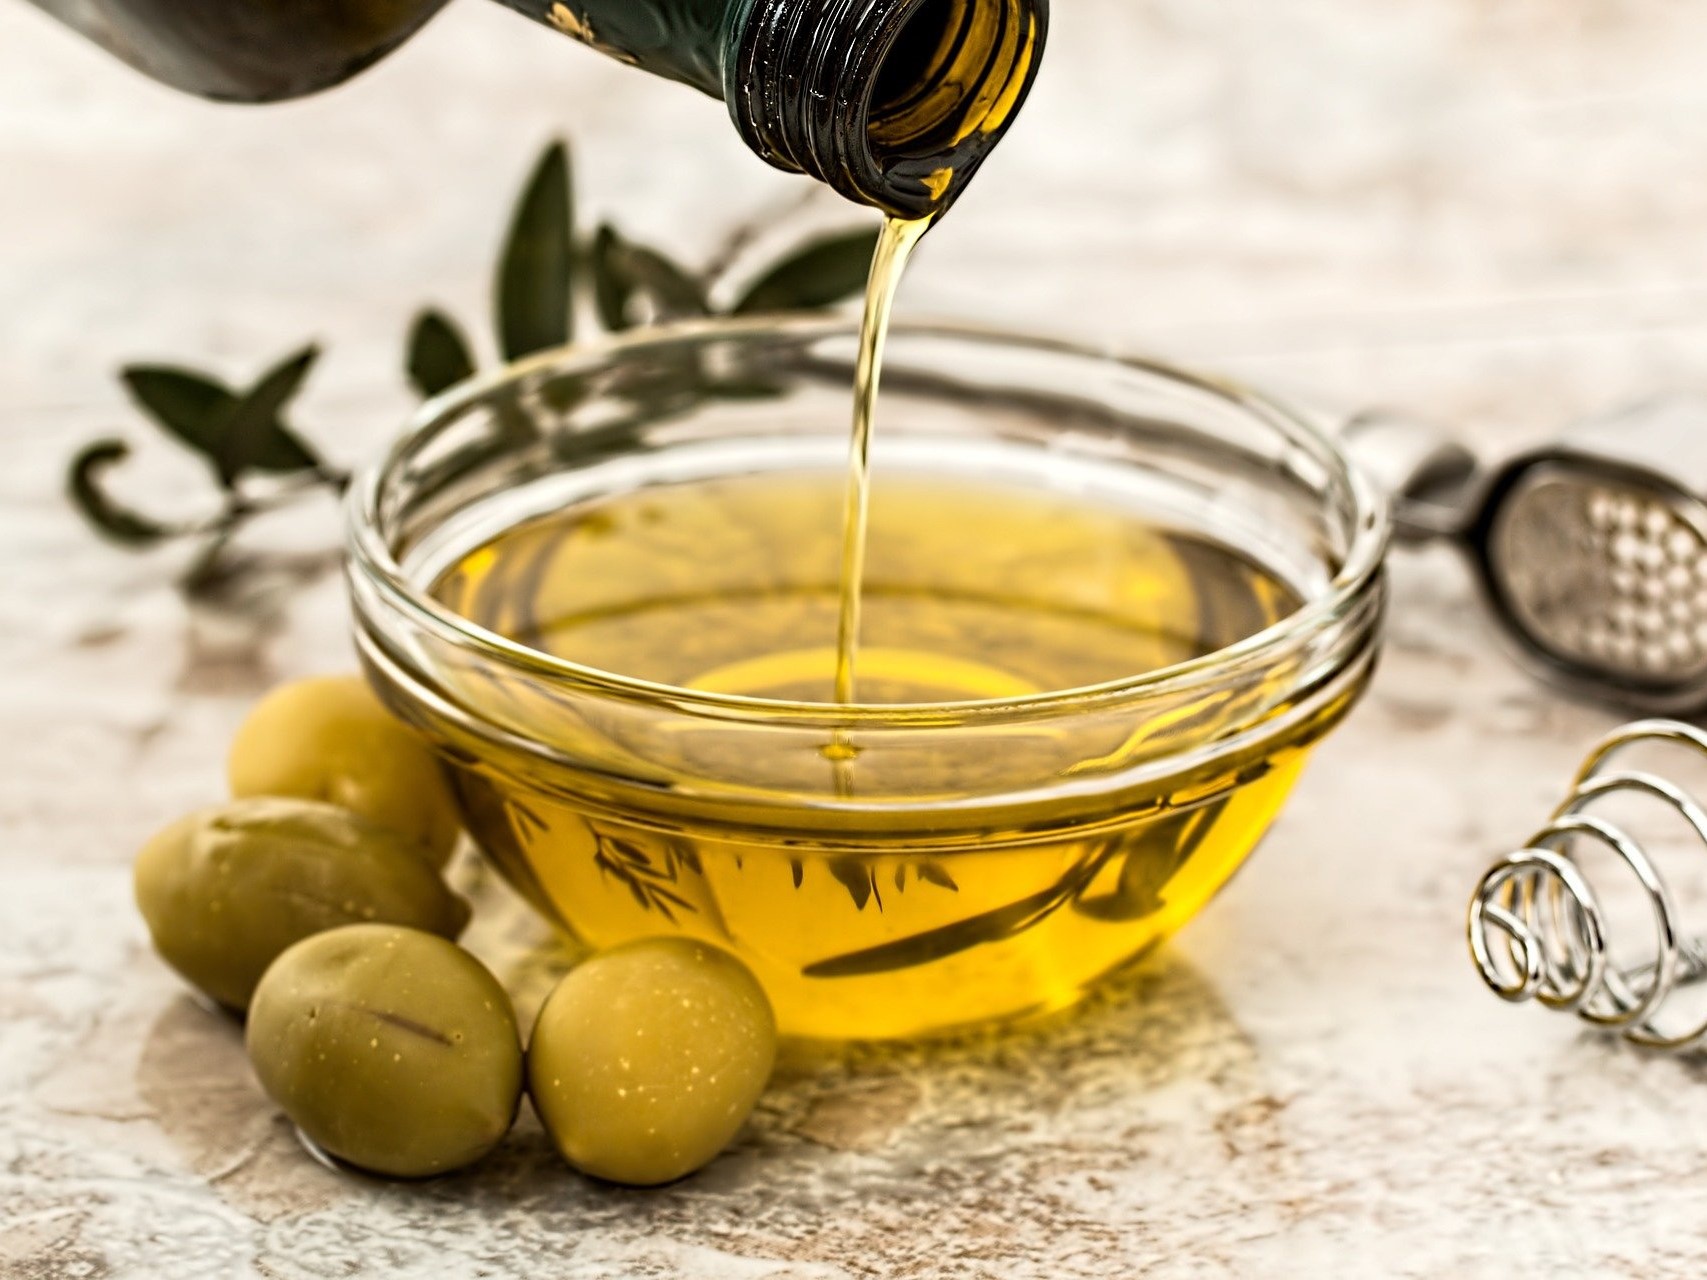 olijfolie bevat veel polyfenolen